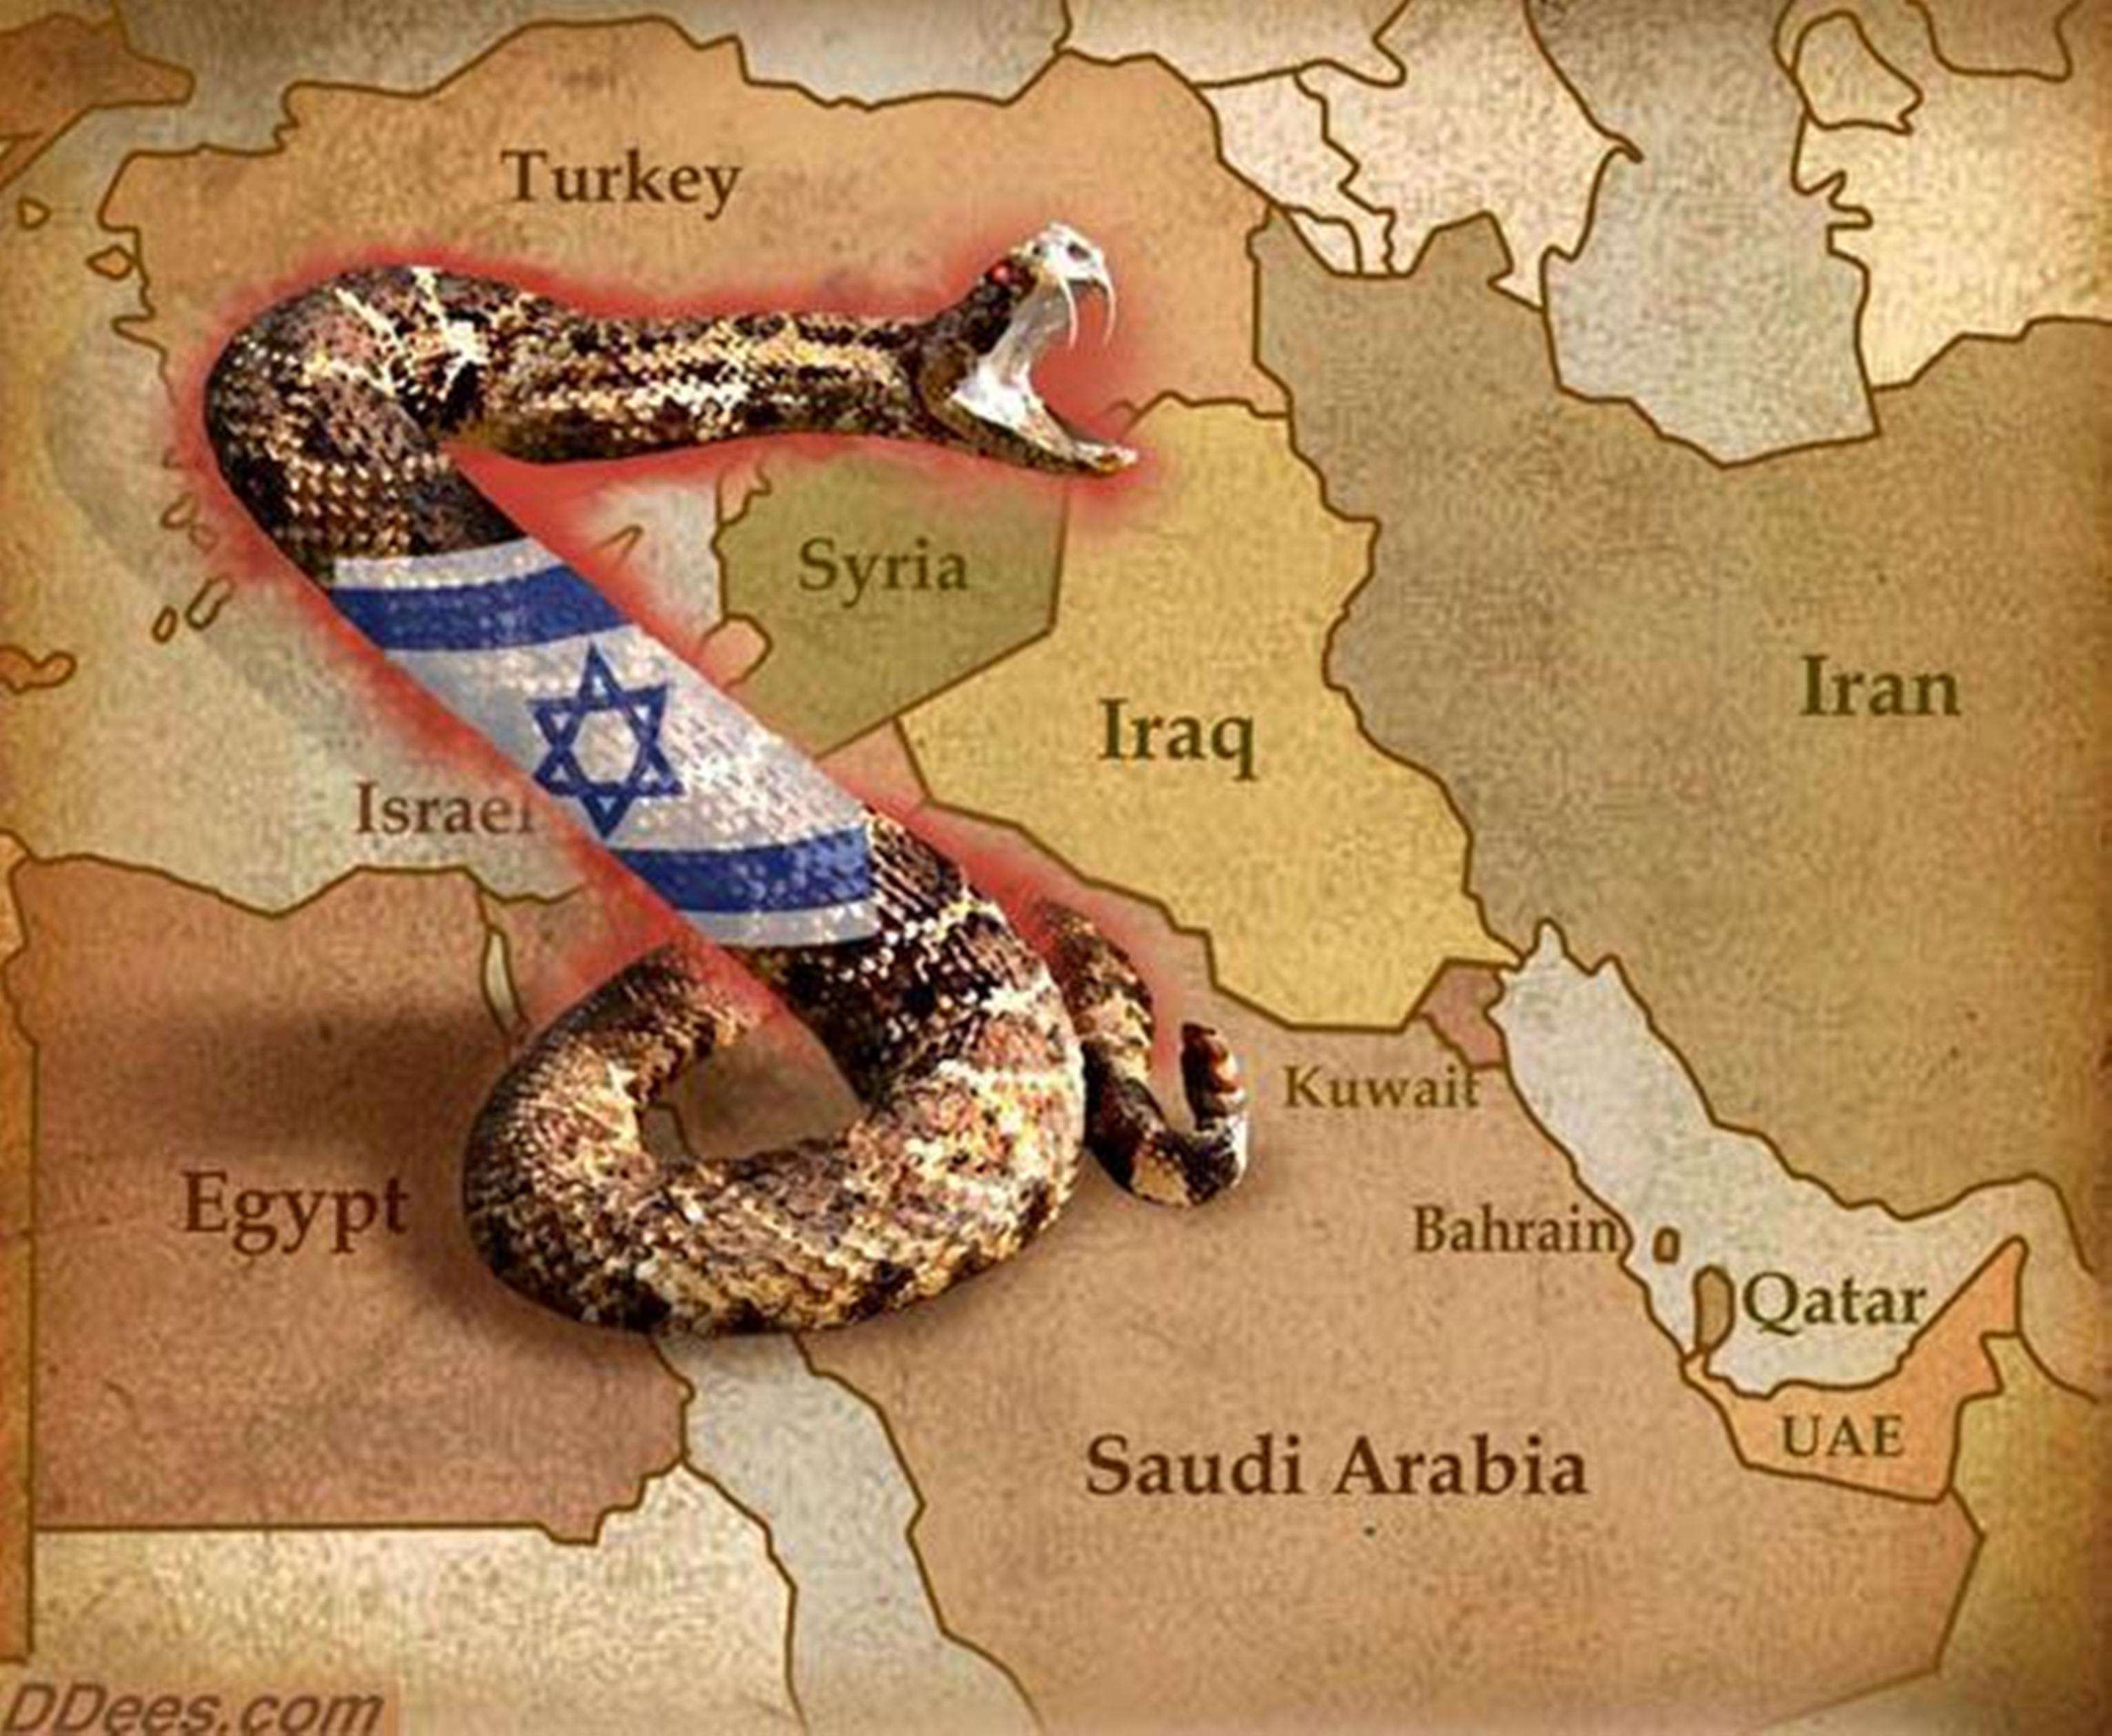 سعودی عرب امریکہ کا مقابلہ کرنے کی بجائے امریکہ و اسرائیل کا ہم نوا و پٹھو